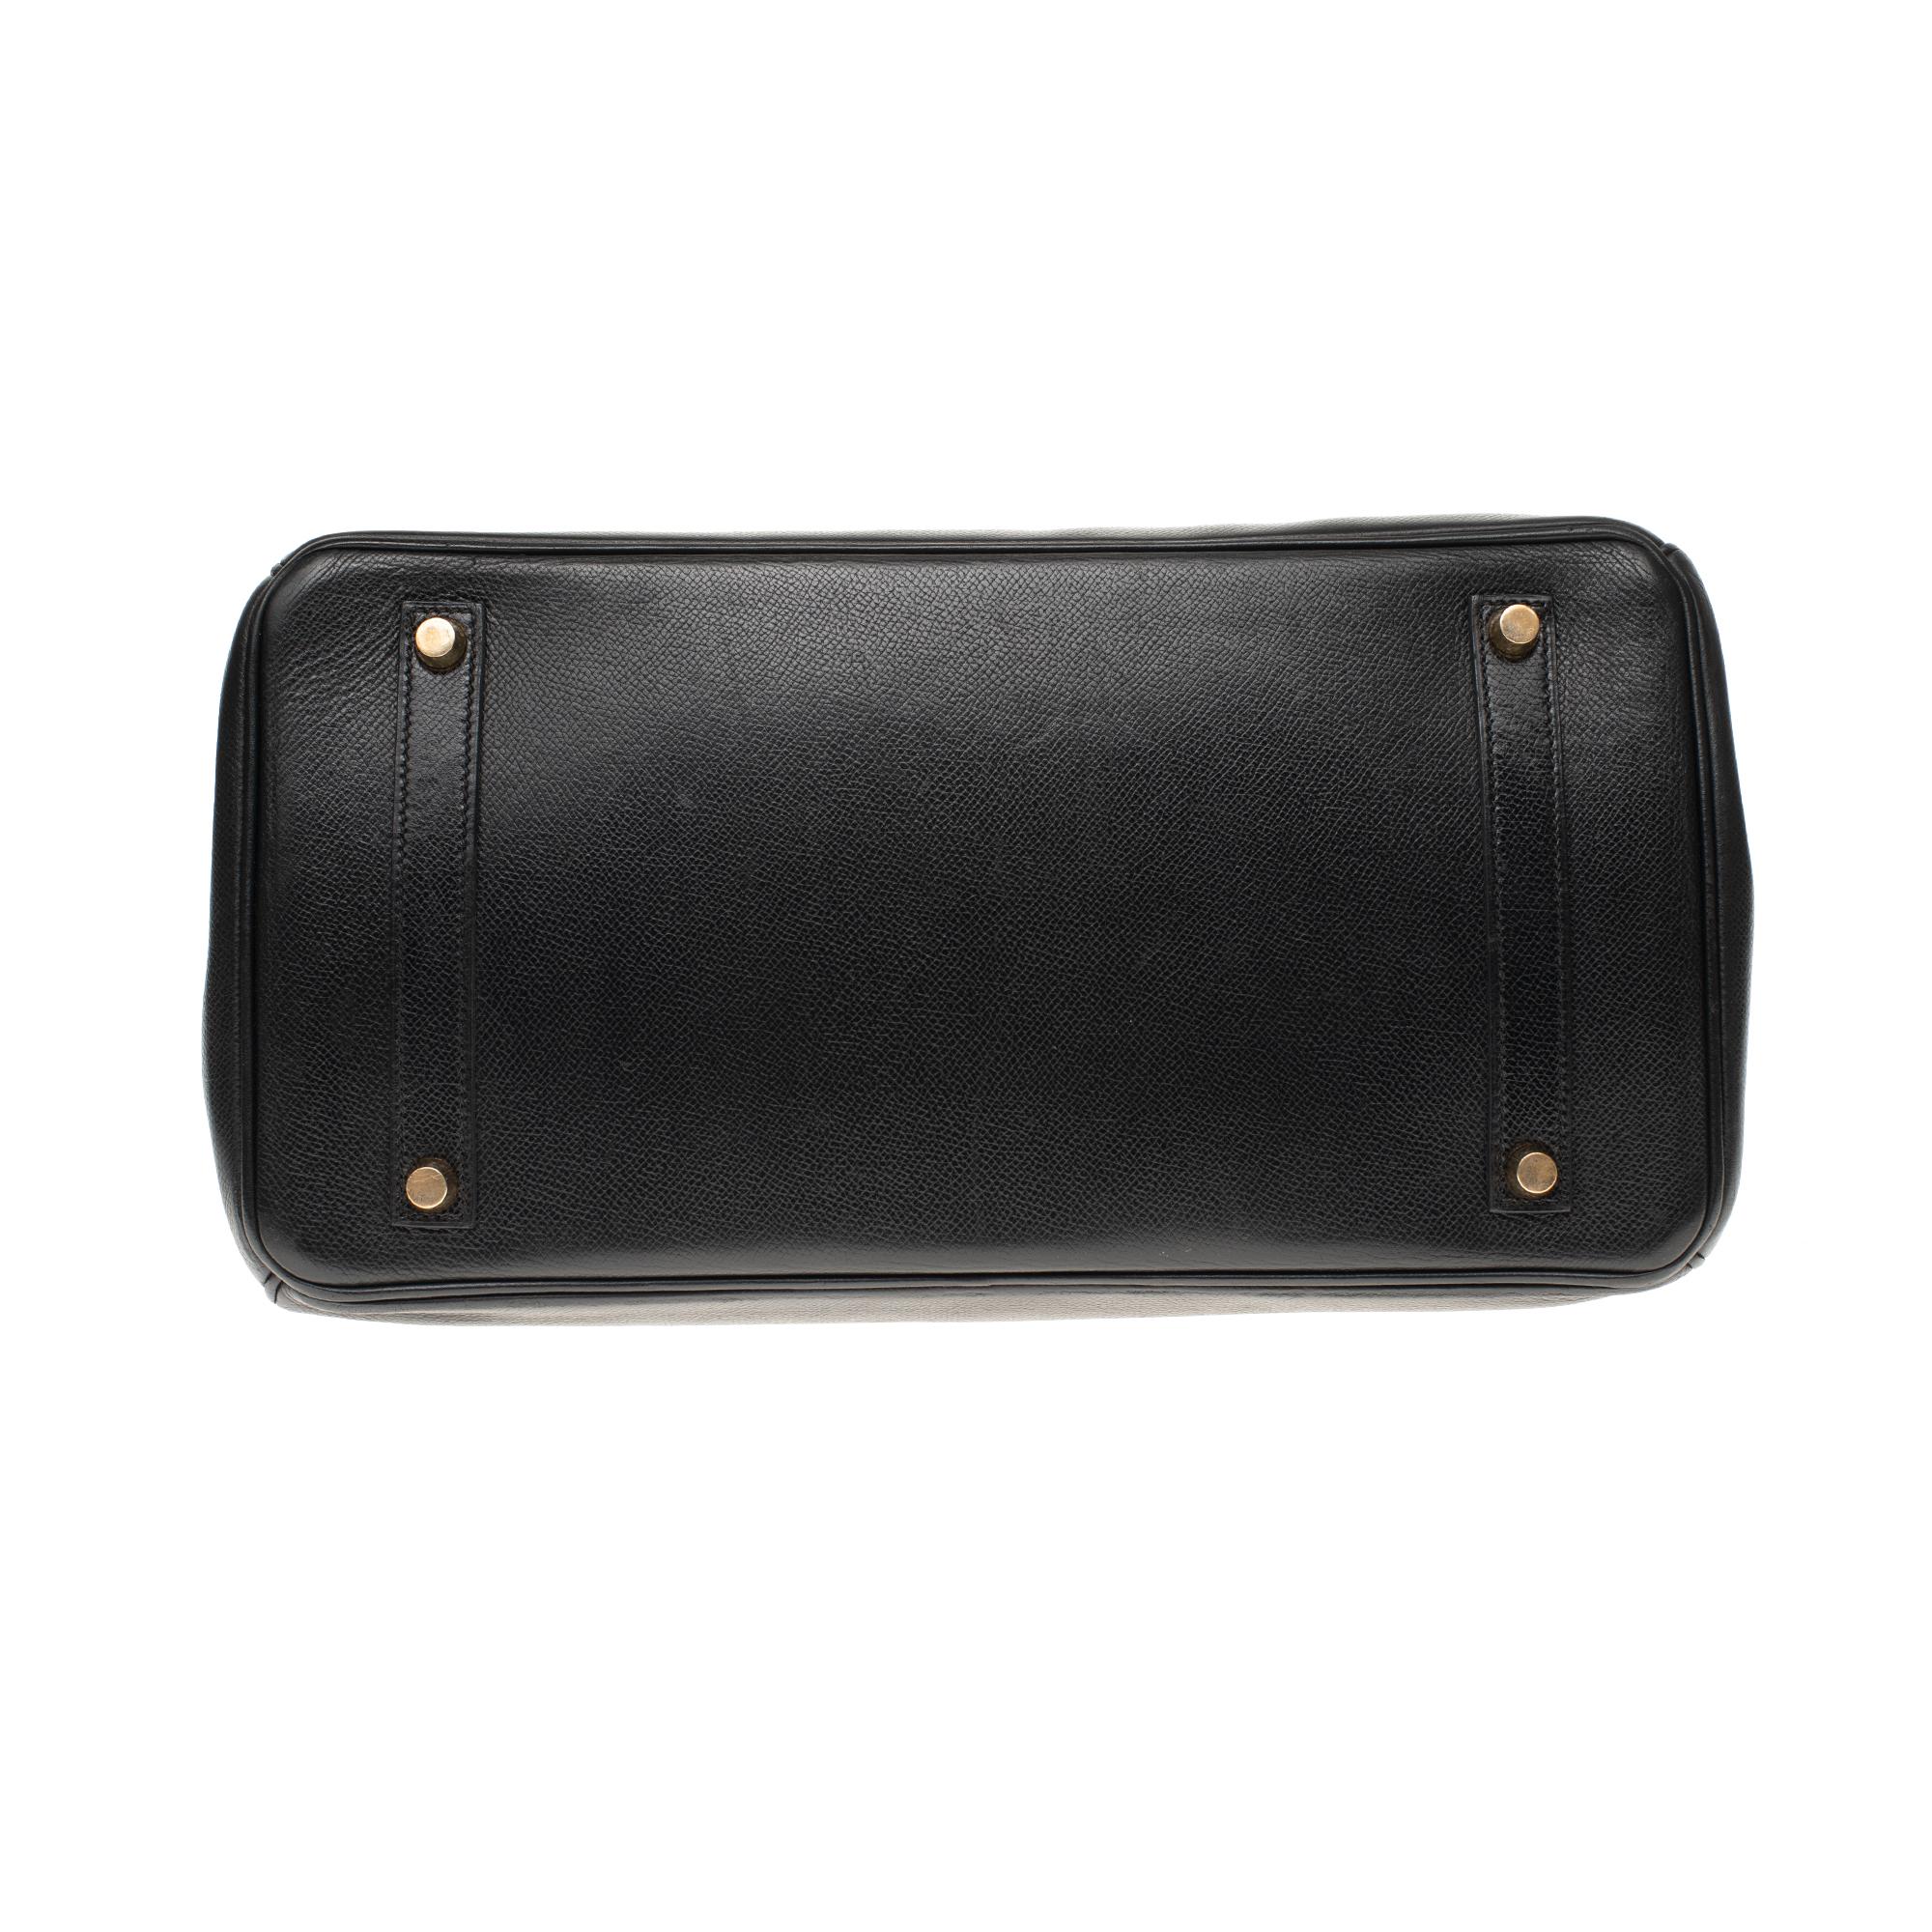 Hermès Birkin 35 handbag in black Courchevel leather, Gold hardware 4